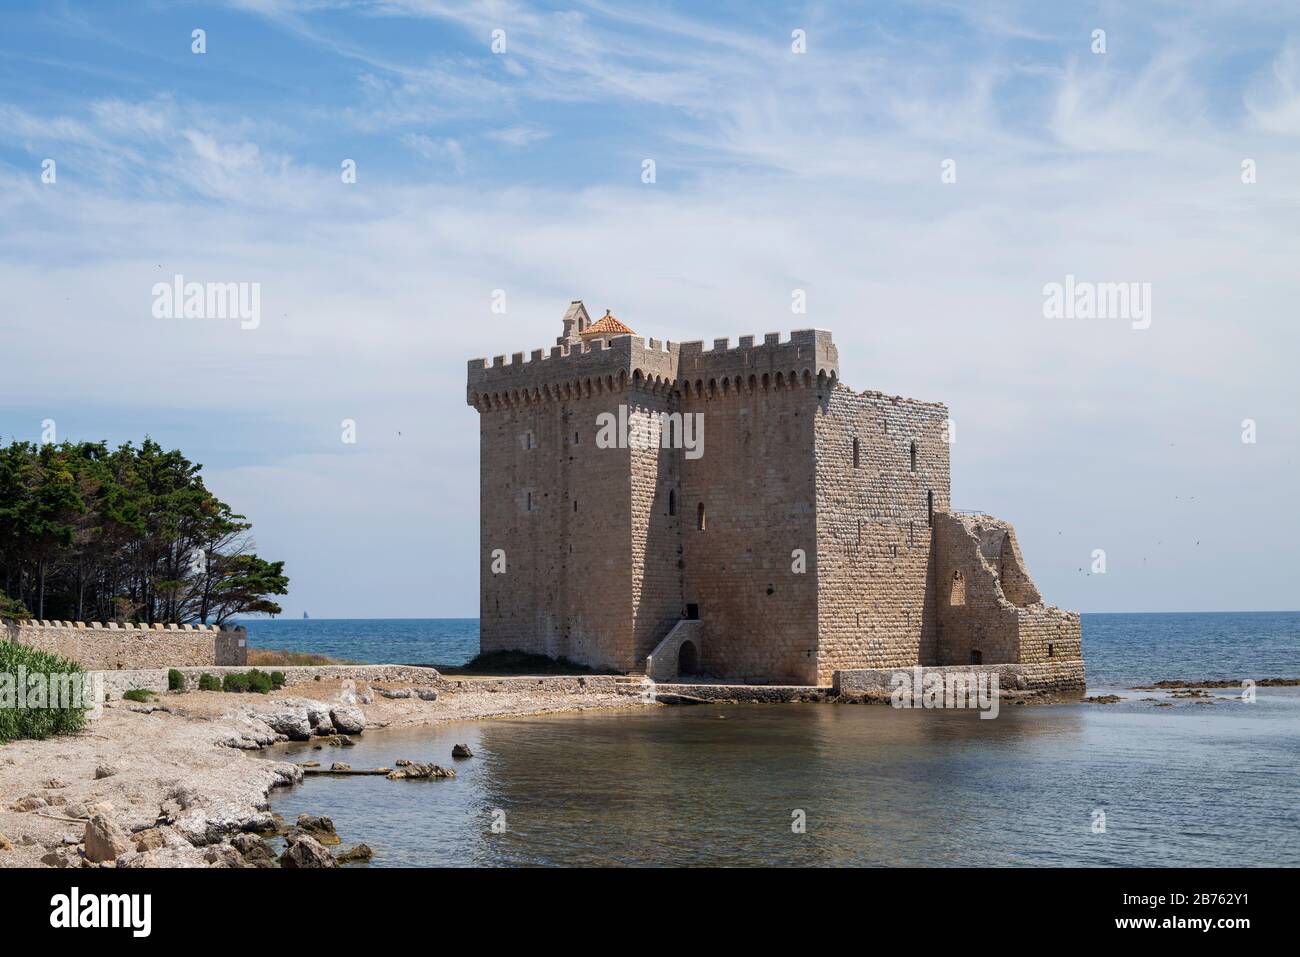 Île de Saint-Honorat, monastère cistercien fortifié. Cannes, côte d'azur, Iles Lerins, France. Forteresse en France Banque D'Images